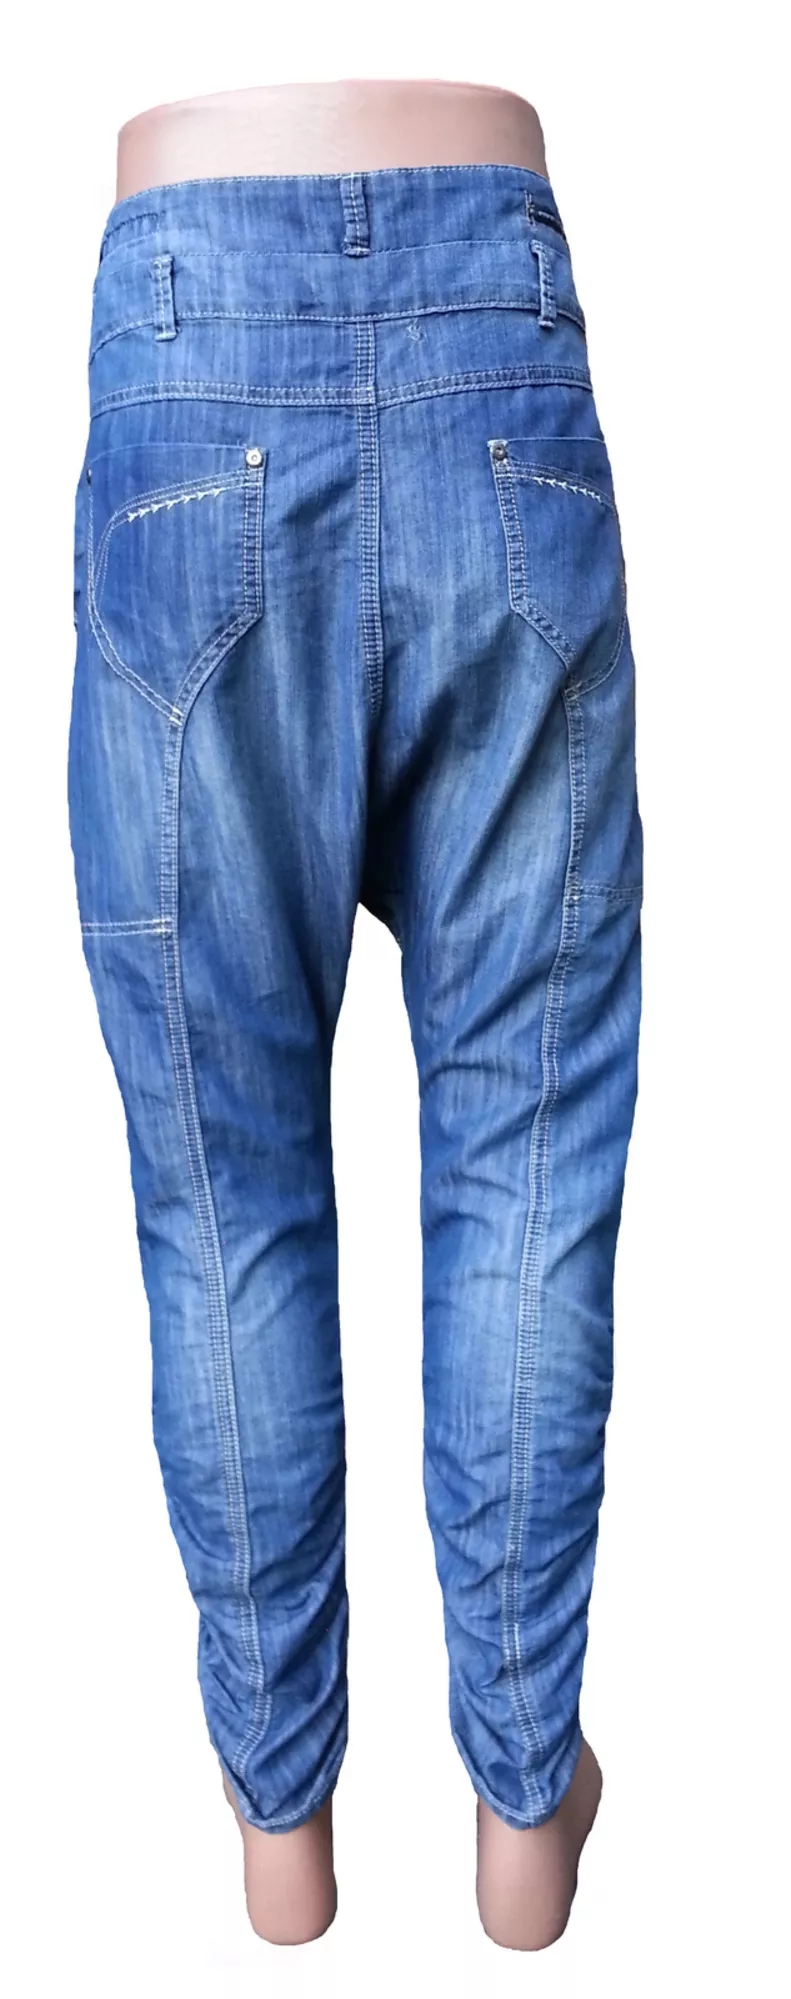 Продам мужские джинсы с мотней 2